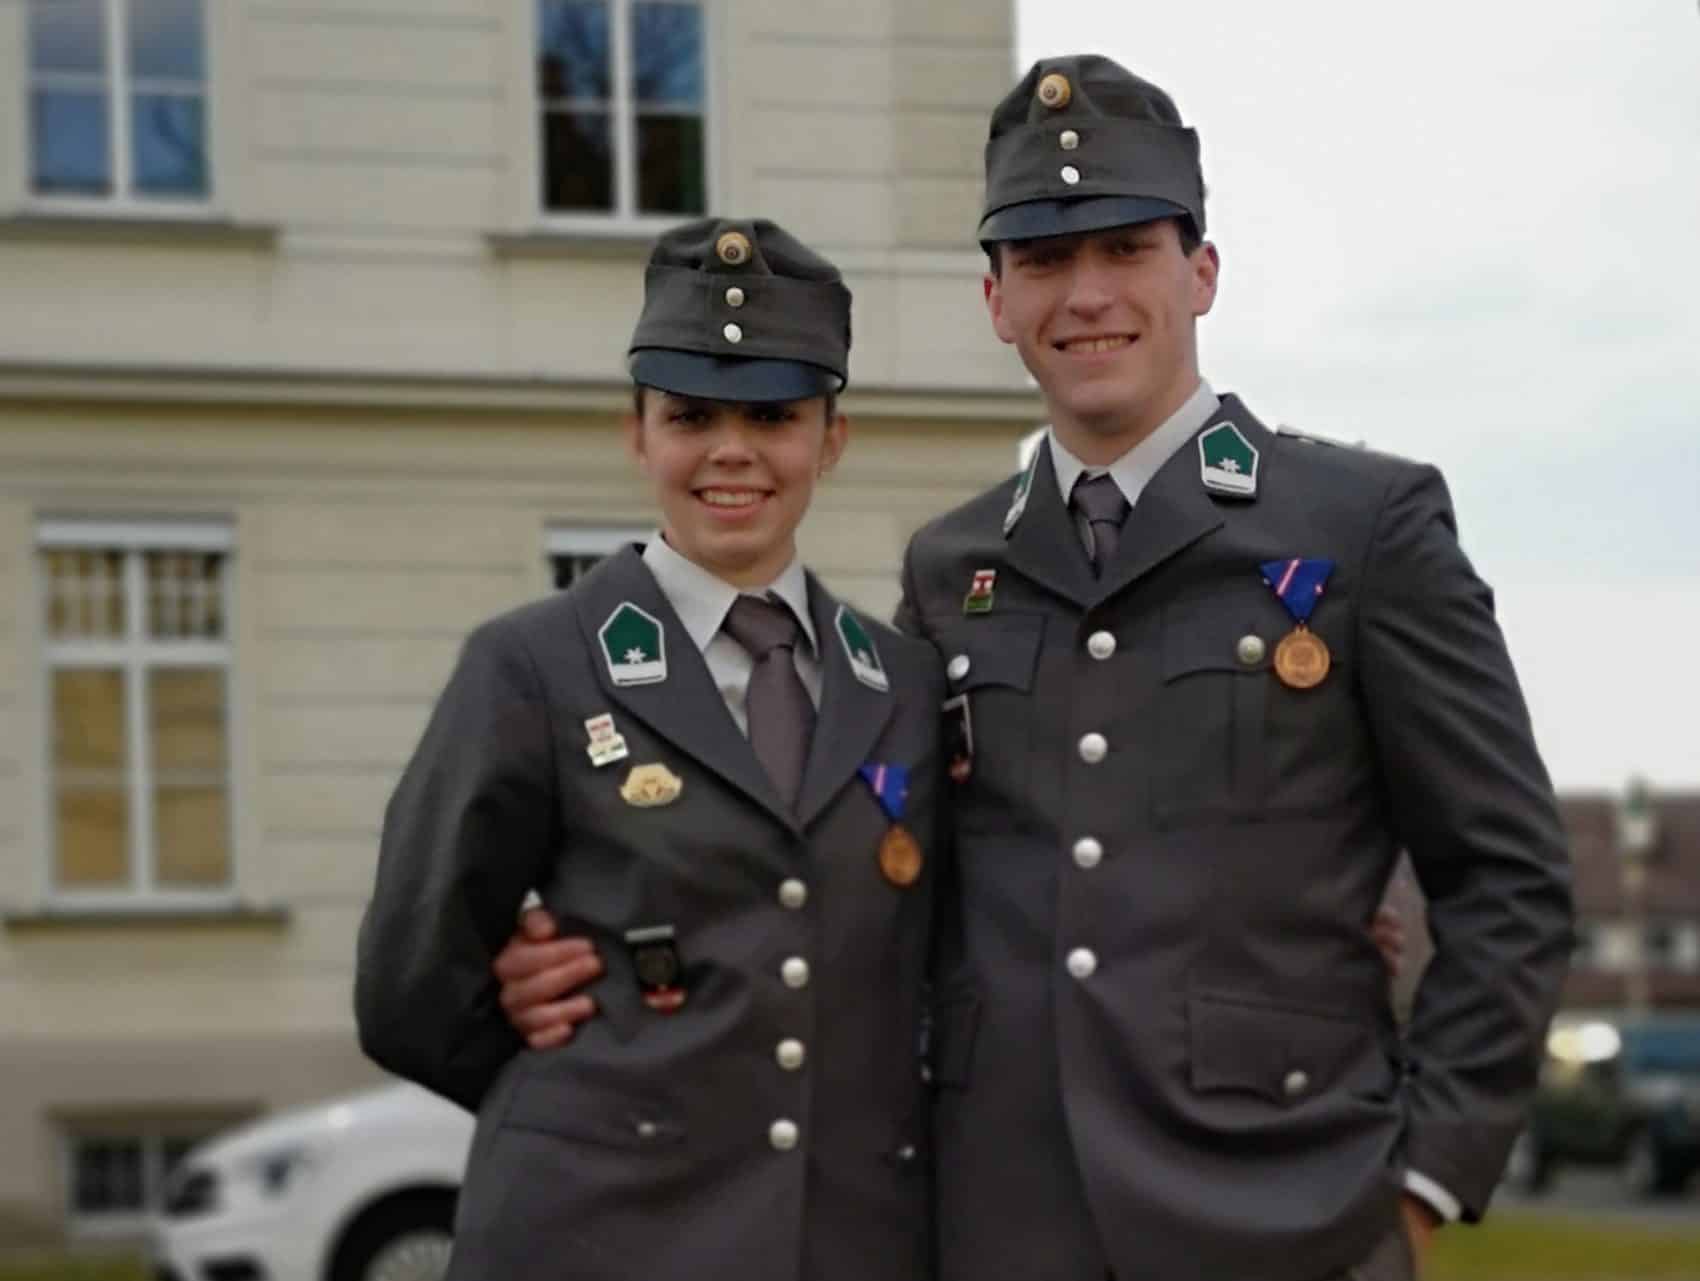 Die Feuerwehren Dolintschach und Kerschdorf/Velden gratulieren Daniela und Michael recht herzlich und wünschen ihnen alles Gute und viel Erfolg auf ihrem weiteren Lebensweg. 